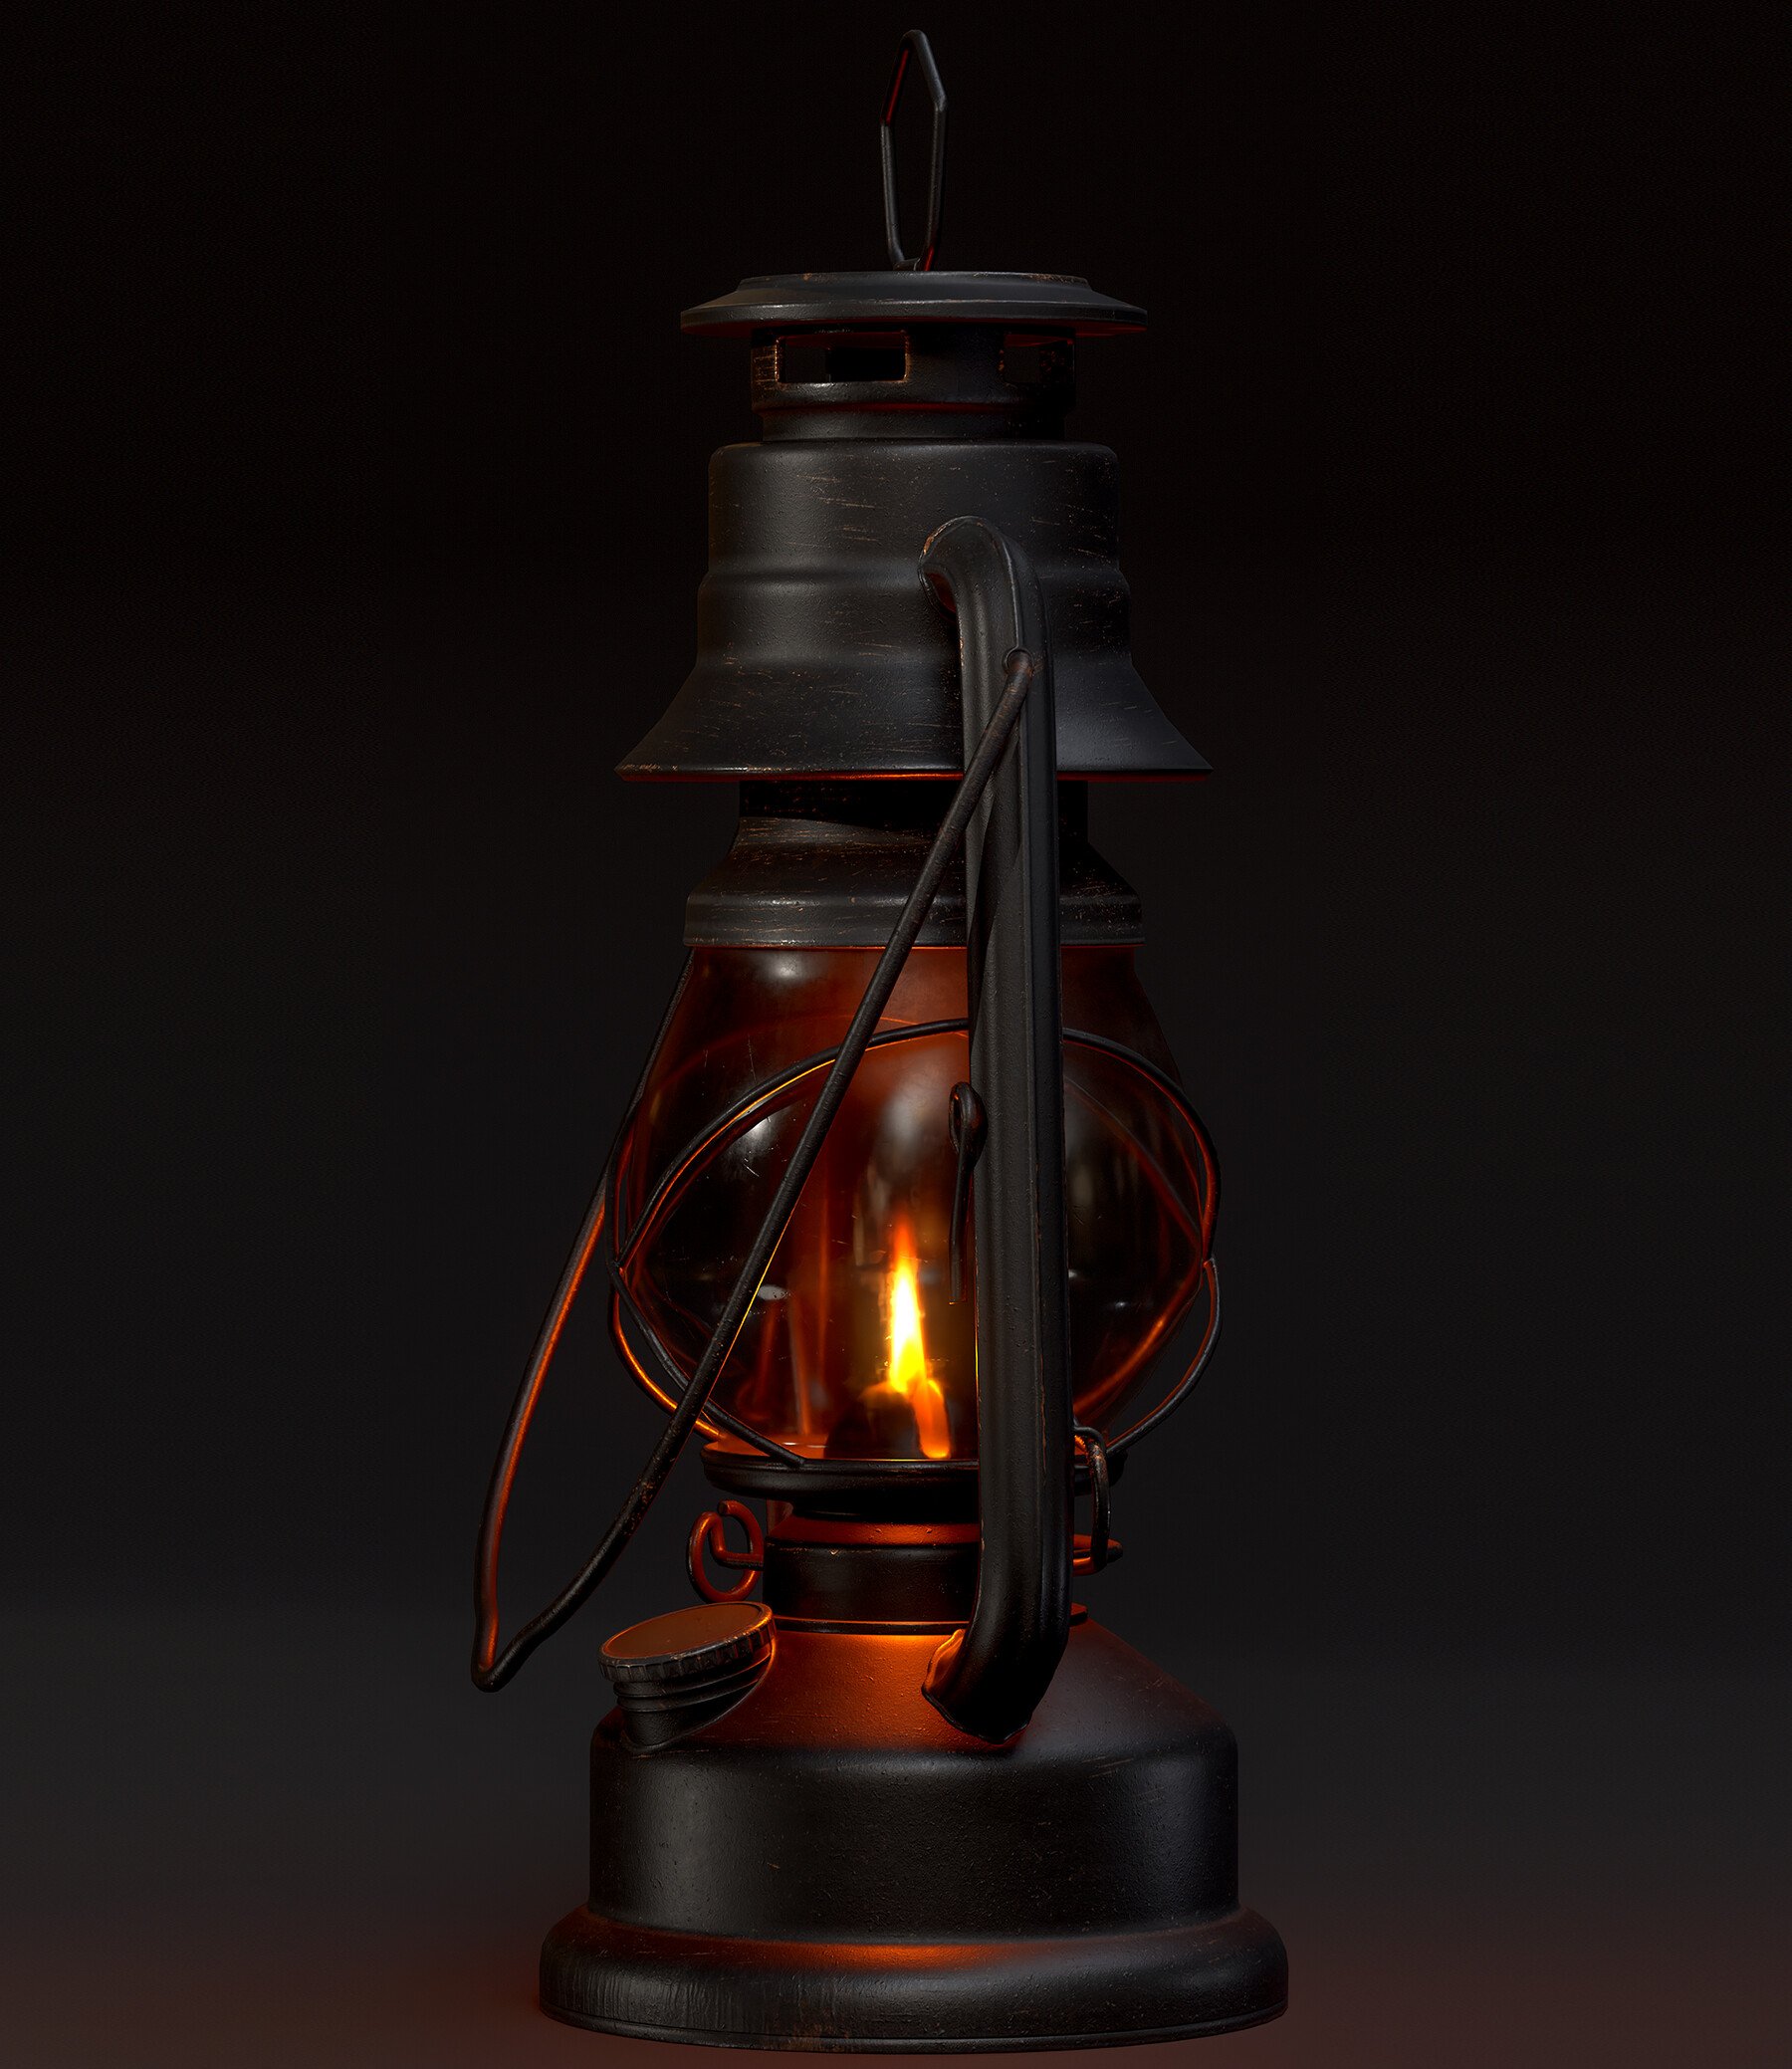 Old kerosene lamp game pixel art Royalty Free Vector Image